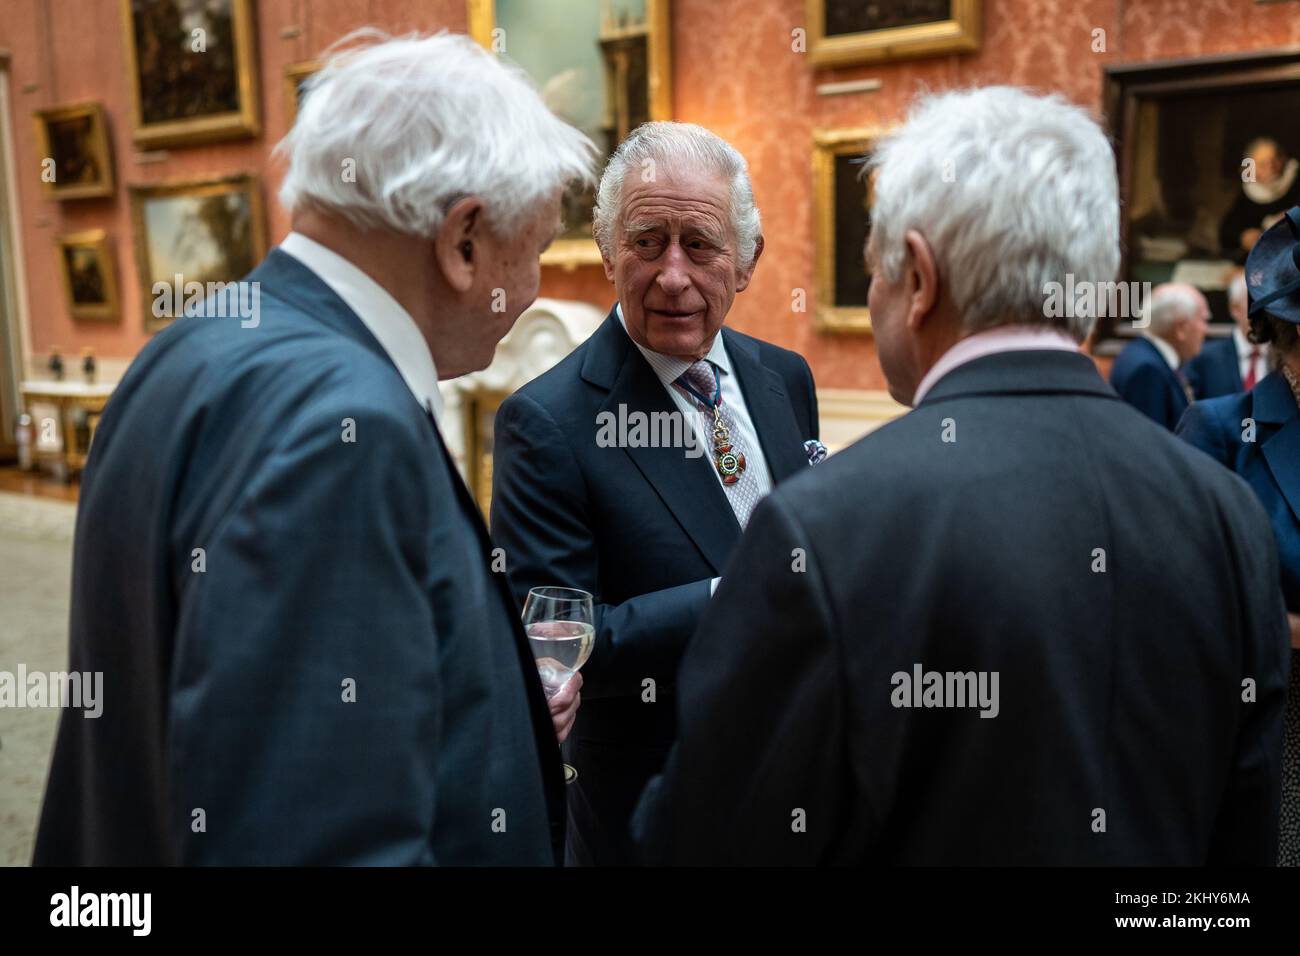 Le roi Charles III s'entretient avec Sir David Attenborough (à gauche) lors d'un déjeuner à l'intention des membres de l'ordre du mérite, au Palais de Buckingham, à Londres. Date de la photo: Jeudi 24 novembre 2022. Banque D'Images